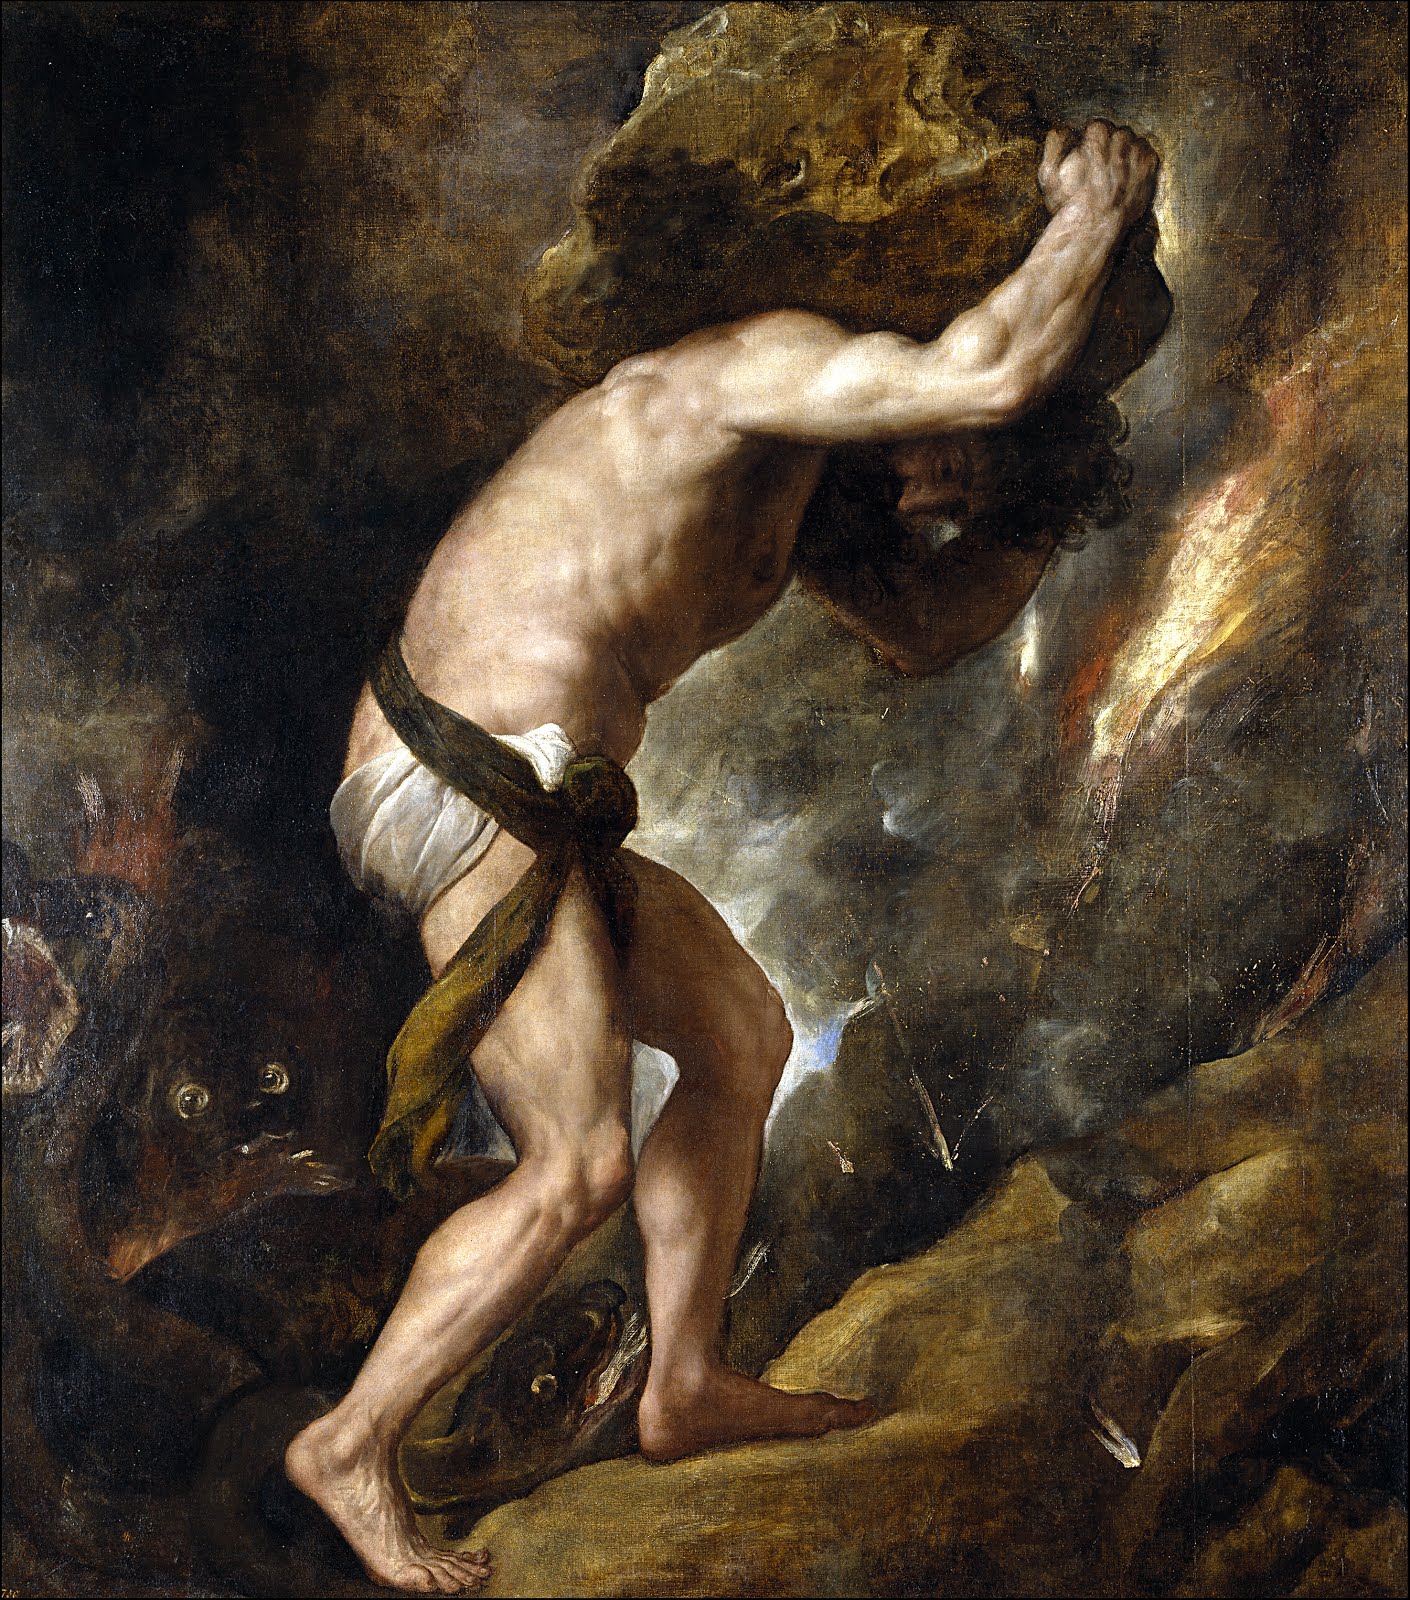 Sisyphus (by Titian, 1549)